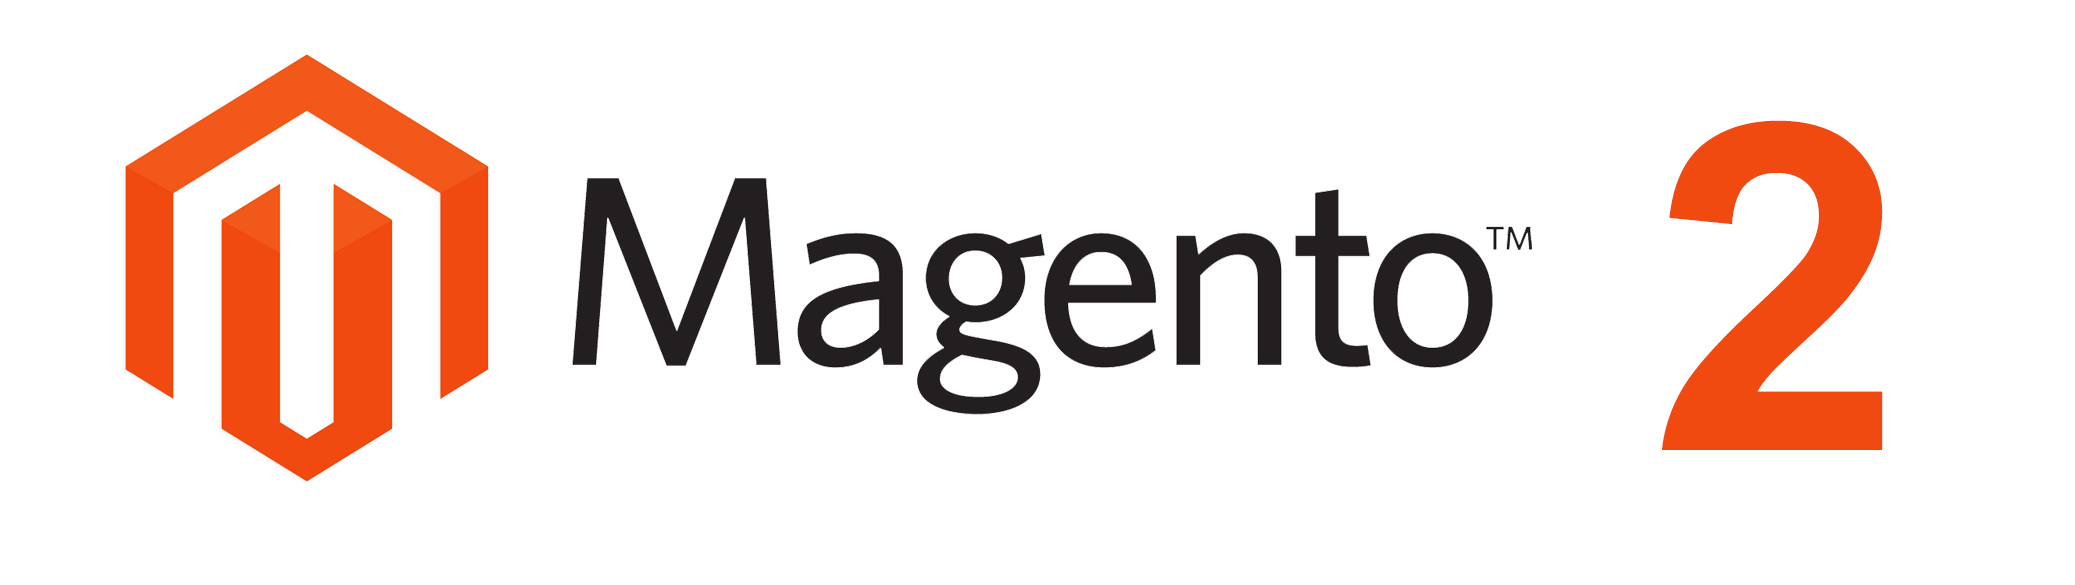 magento2-logo.png